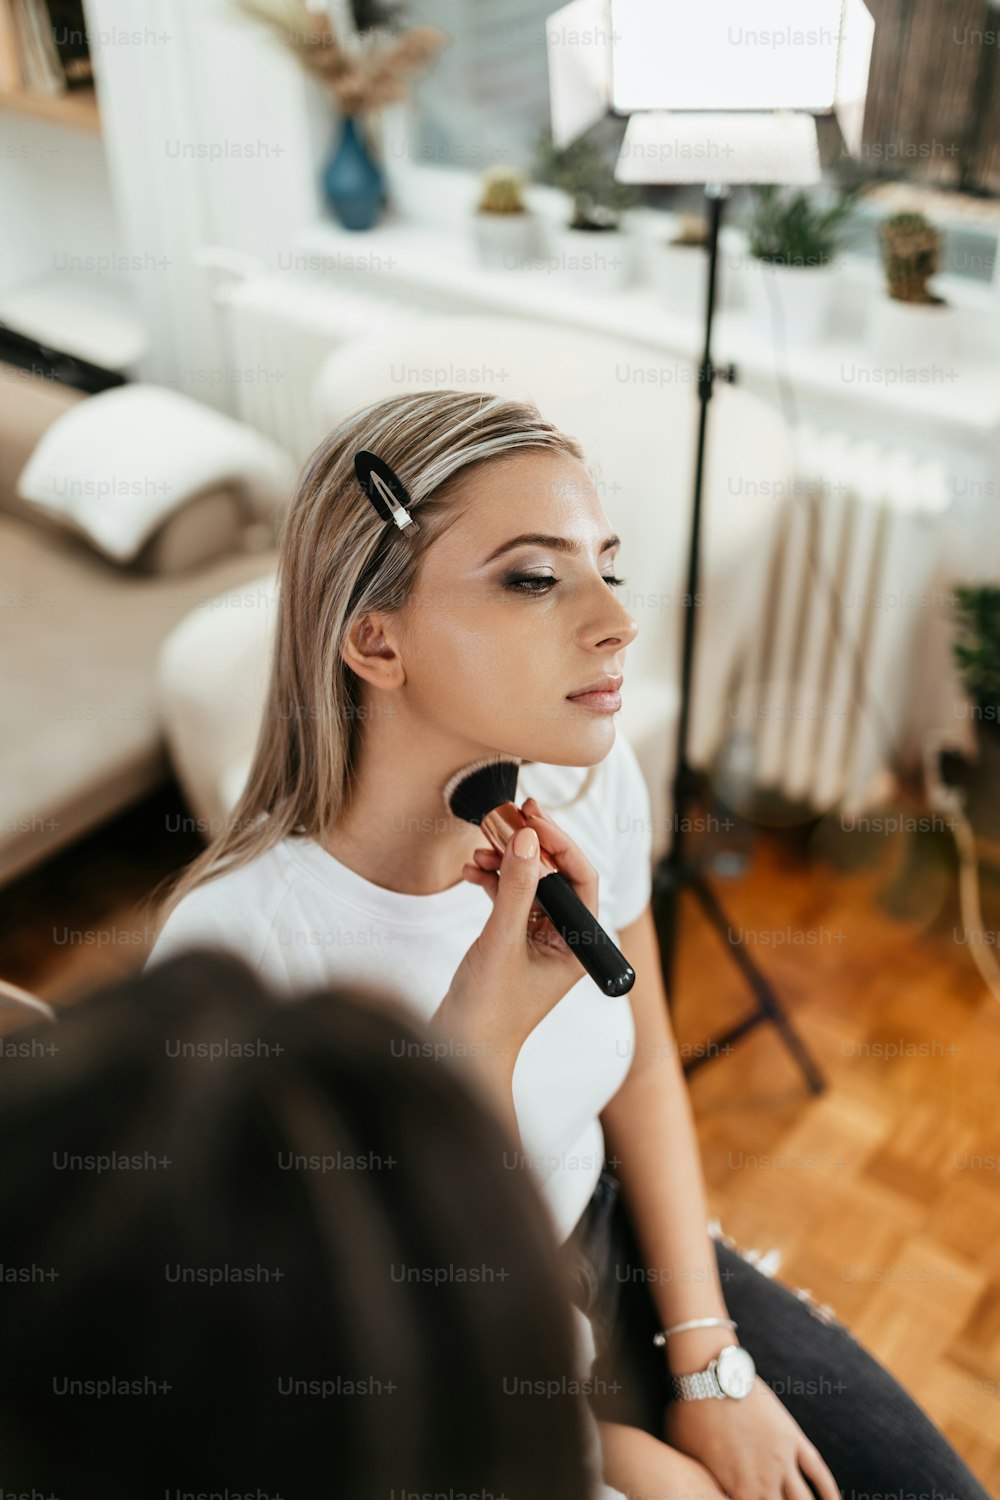 Processus de maquillage. Artiste professionnel appliquant du maquillage sur le visage du modèle. Portrait en gros plan d’une belle femme blonde dans un salon de beauté.